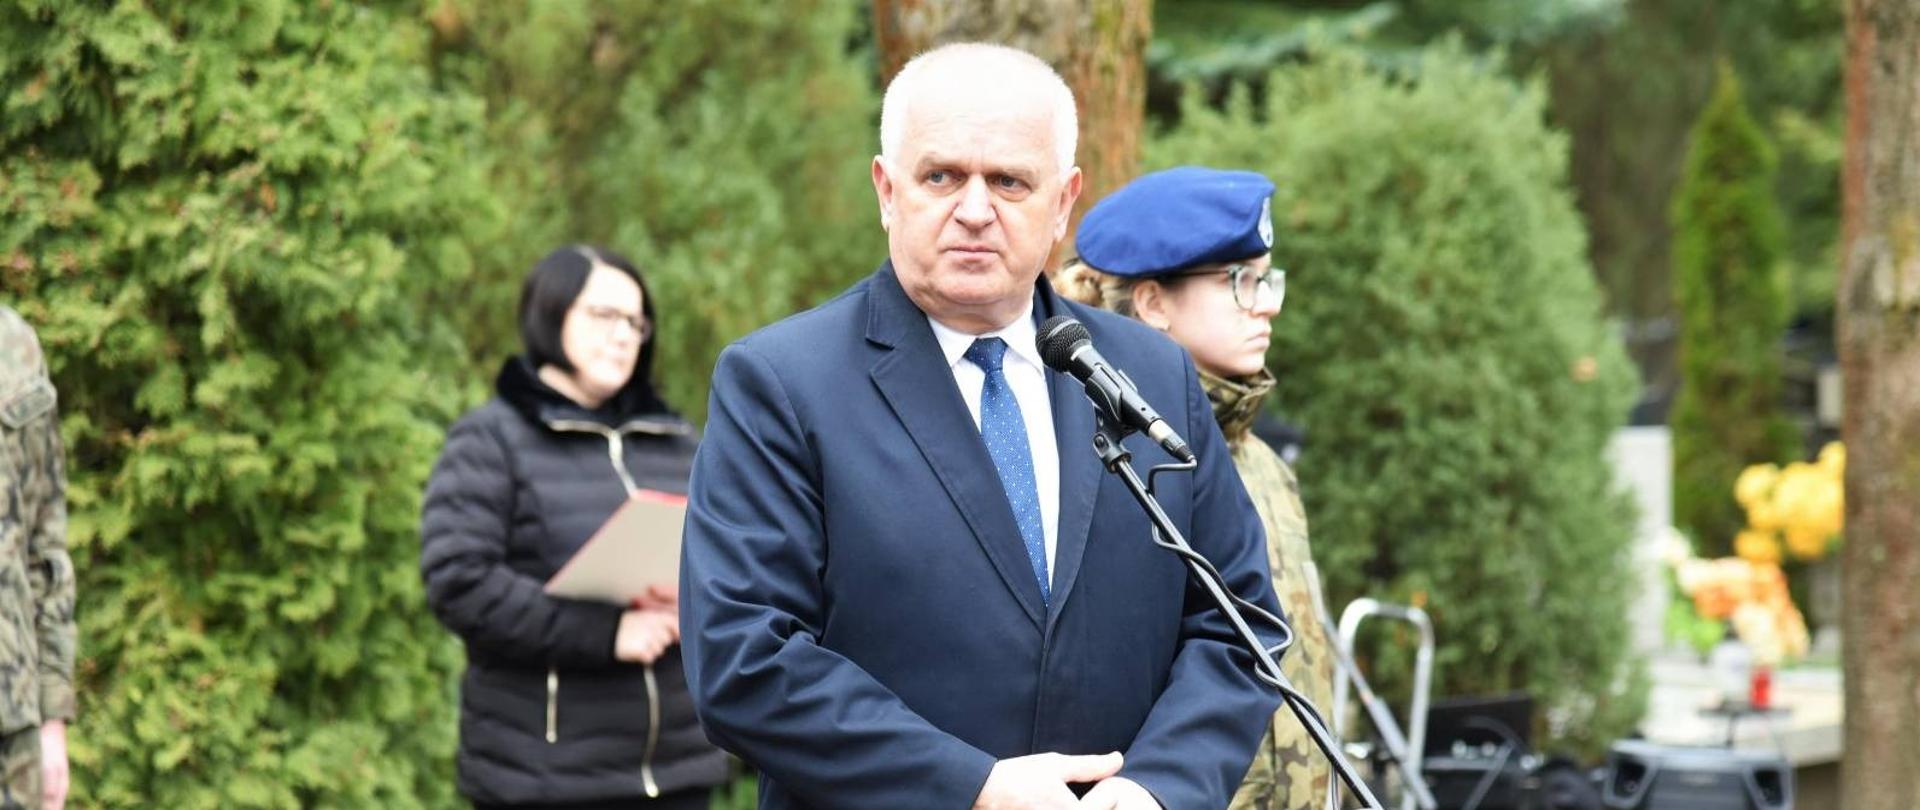 Wojewoda Władysław Dajczak przemawia w czasie uroczystości stojąc przed mikrofonem 